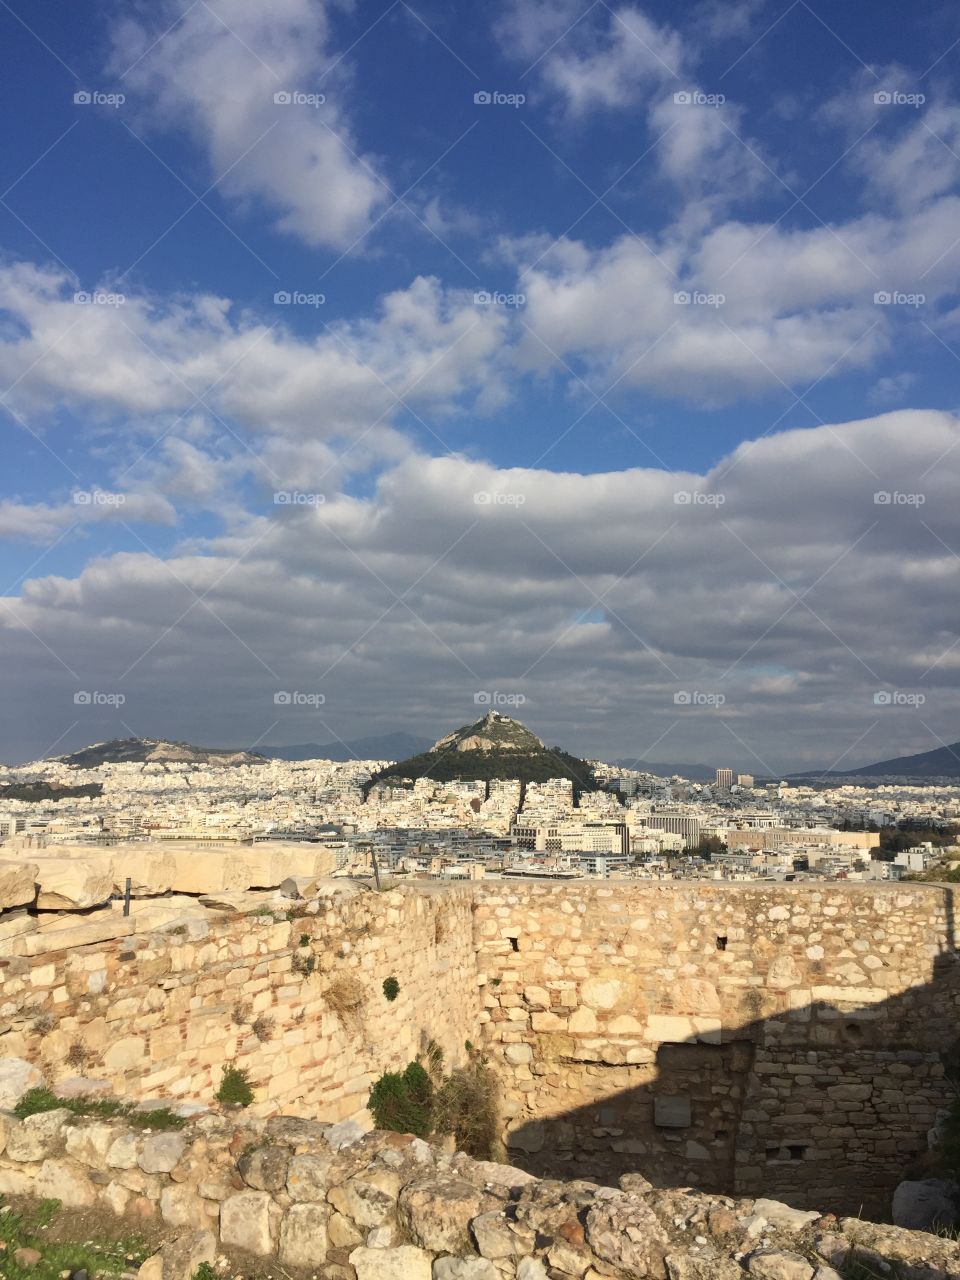 Greece 🇬🇷 - Athens - Licabetto (Acropolis view)